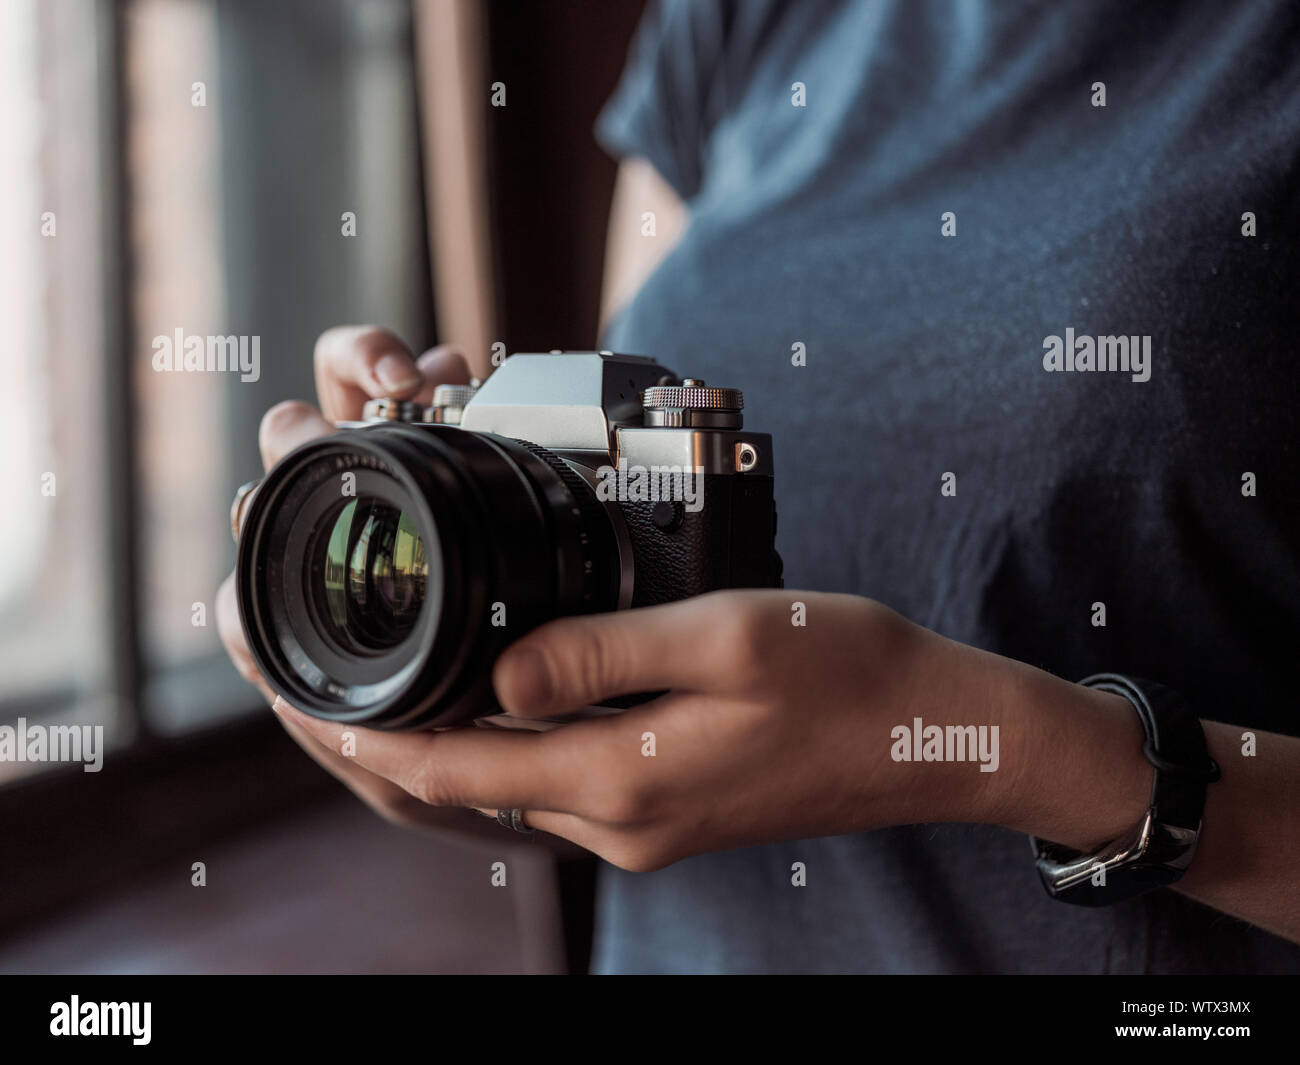 Moskau, Russland - 14. MÄRZ 2019: Fuji Kamera XT3, close-up der jungen Frau auf einem Studio Hintergrund Holding spiegellosen Kamera. Der Reporter ein pic Stockfoto